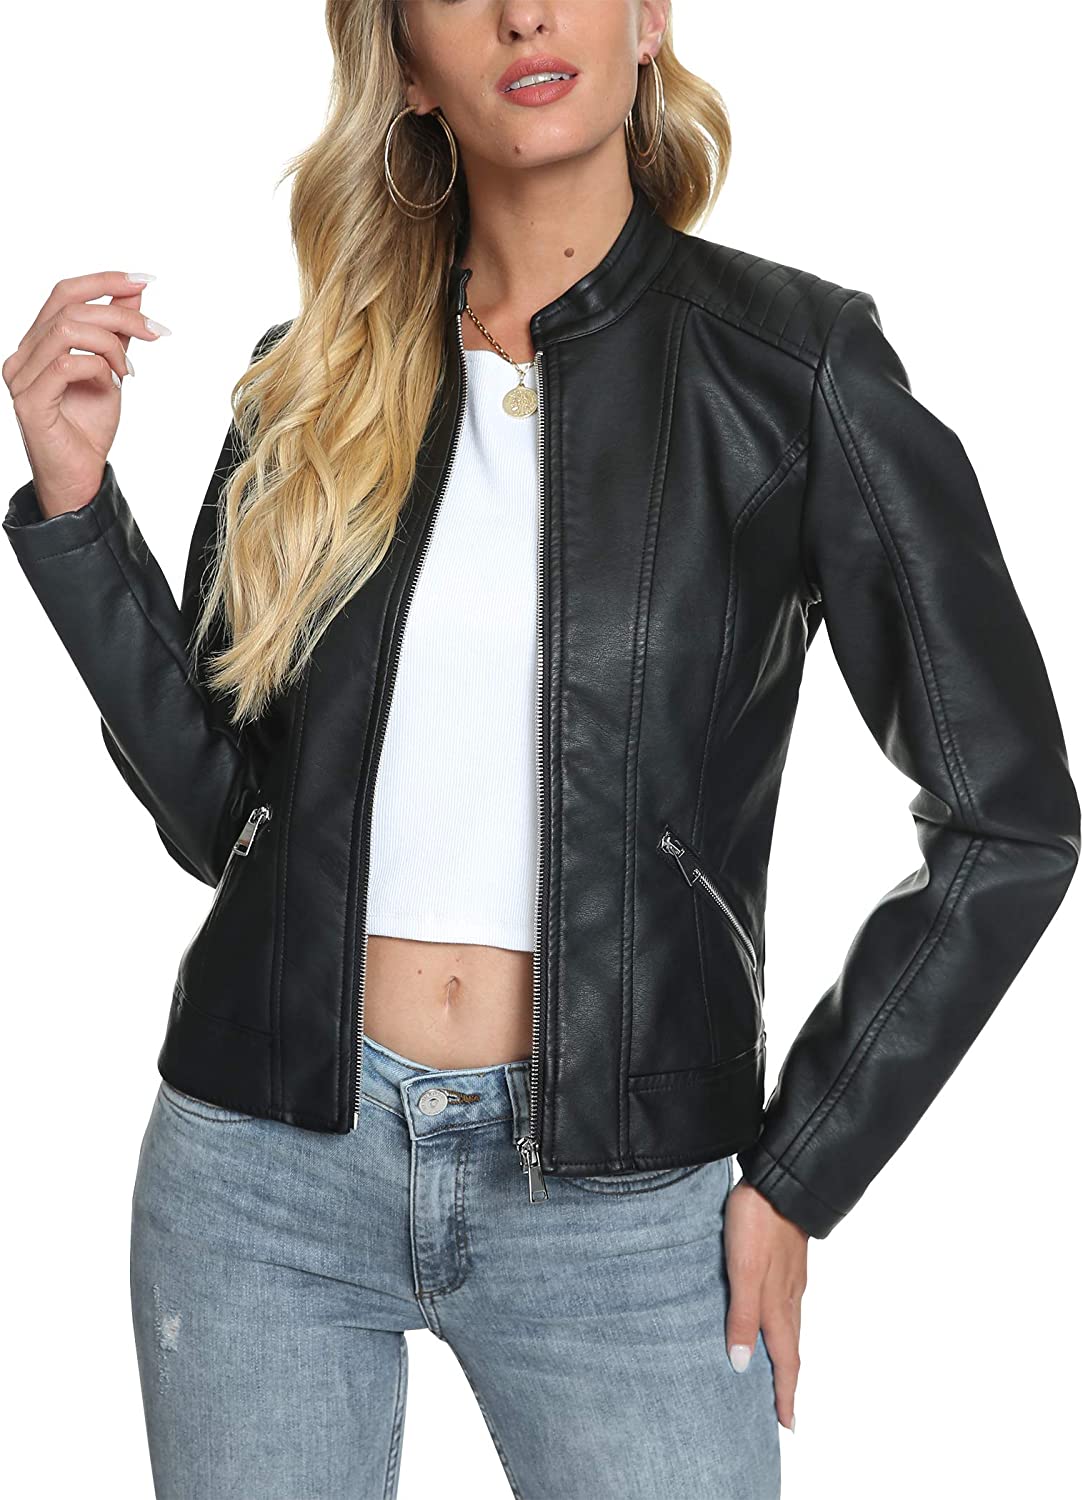 Fahsyee Women's Zip Up Faux Leather Jacket